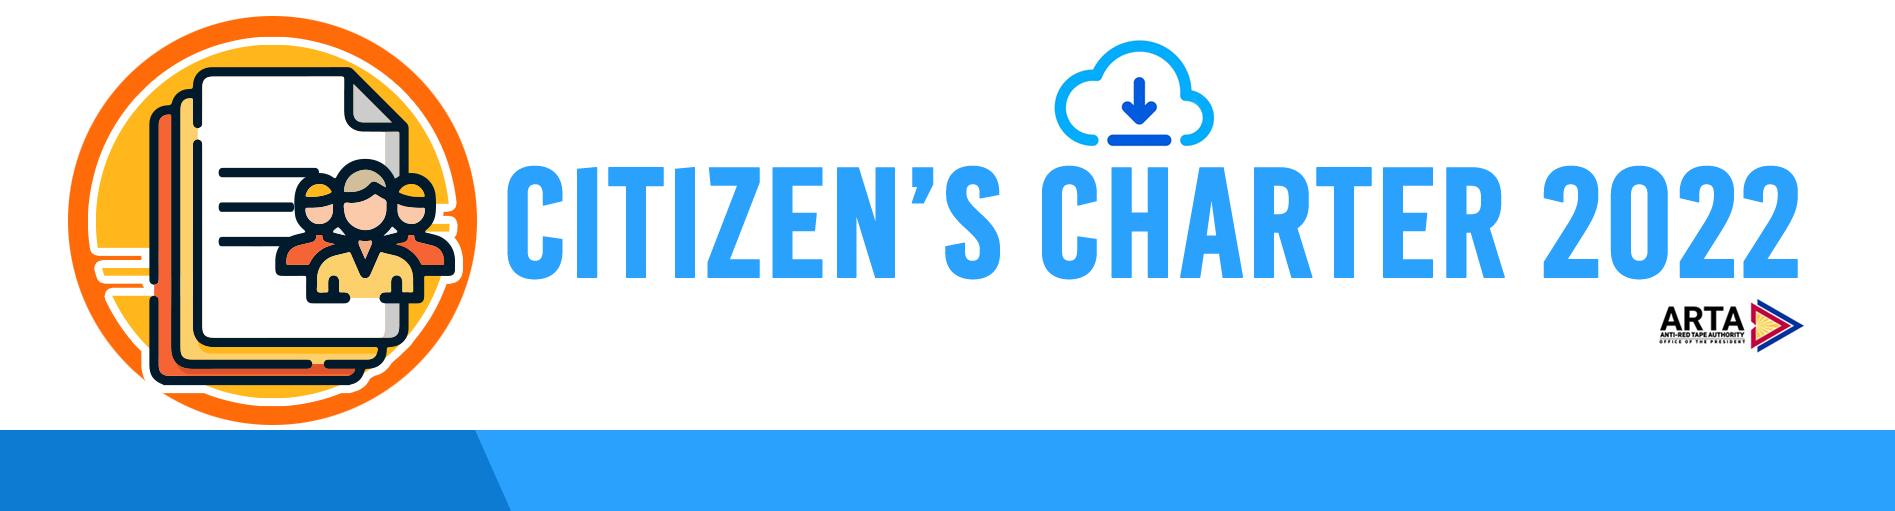 Citizen's Charter 2022